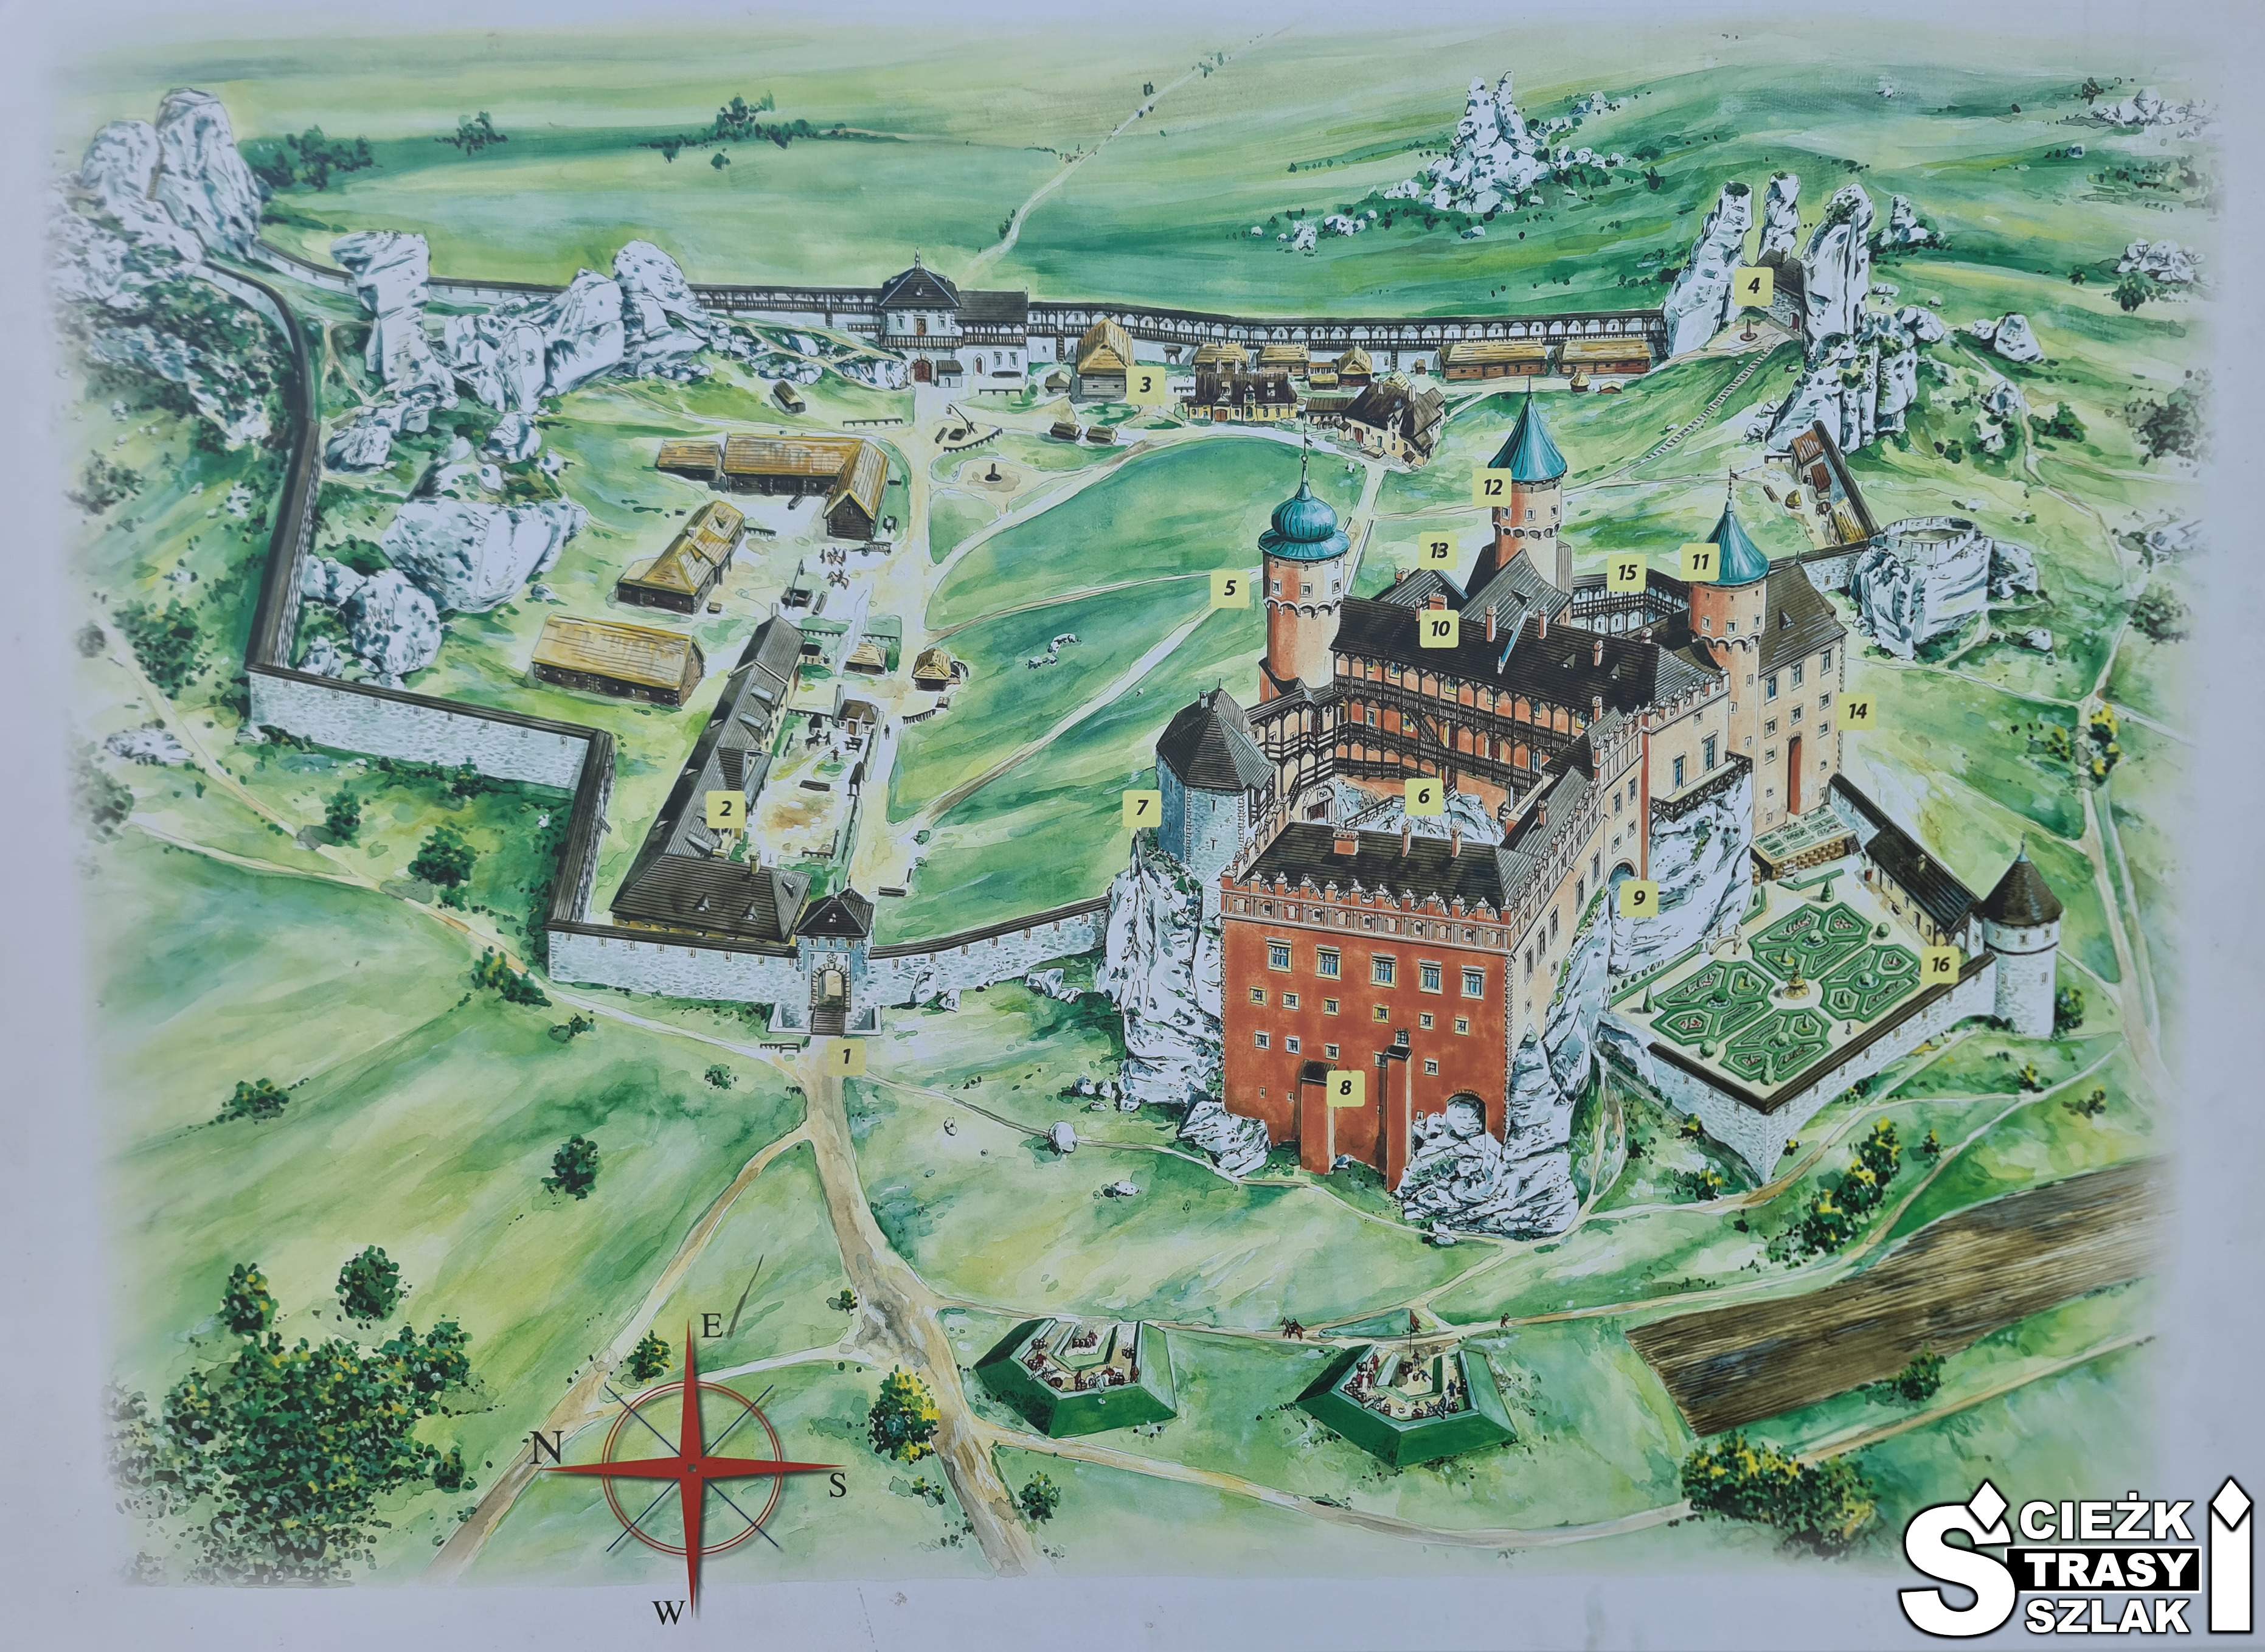 Zamek w Ogrodzieńcu z czasów świetności z zaznaczonymi zabytkowymi budynkami, wieżami, basztami, murami obronnymi, bramami wjazdowymi